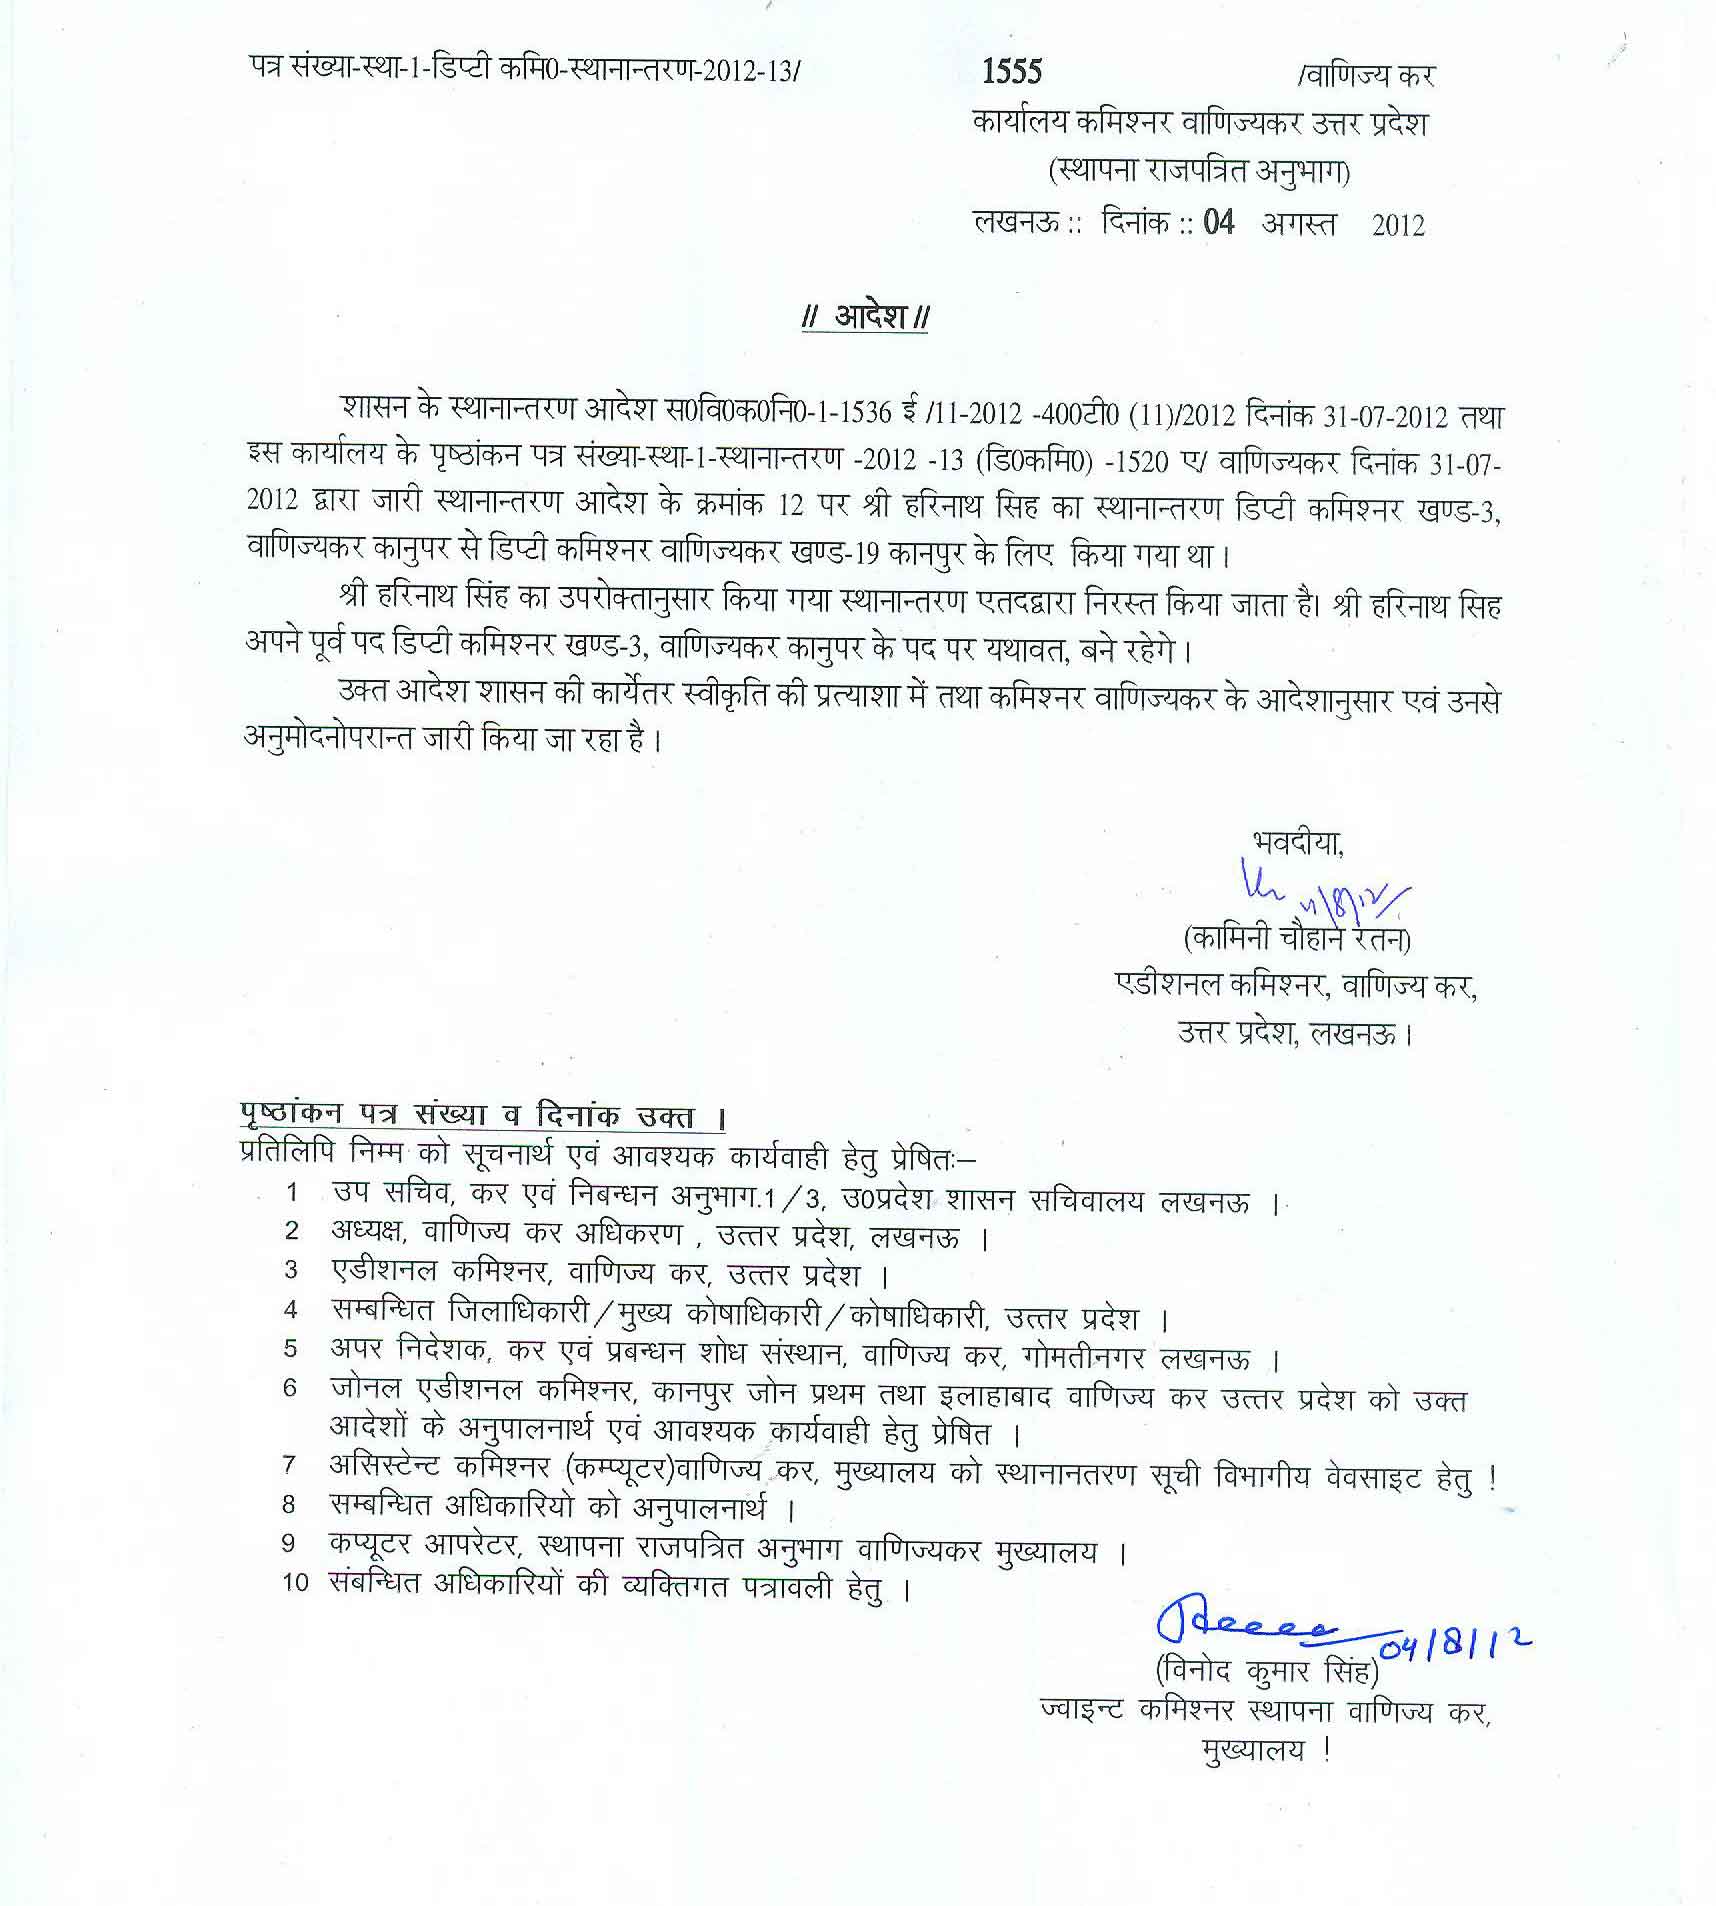 Transfer Cancellation of Shri Harinath Singh DC